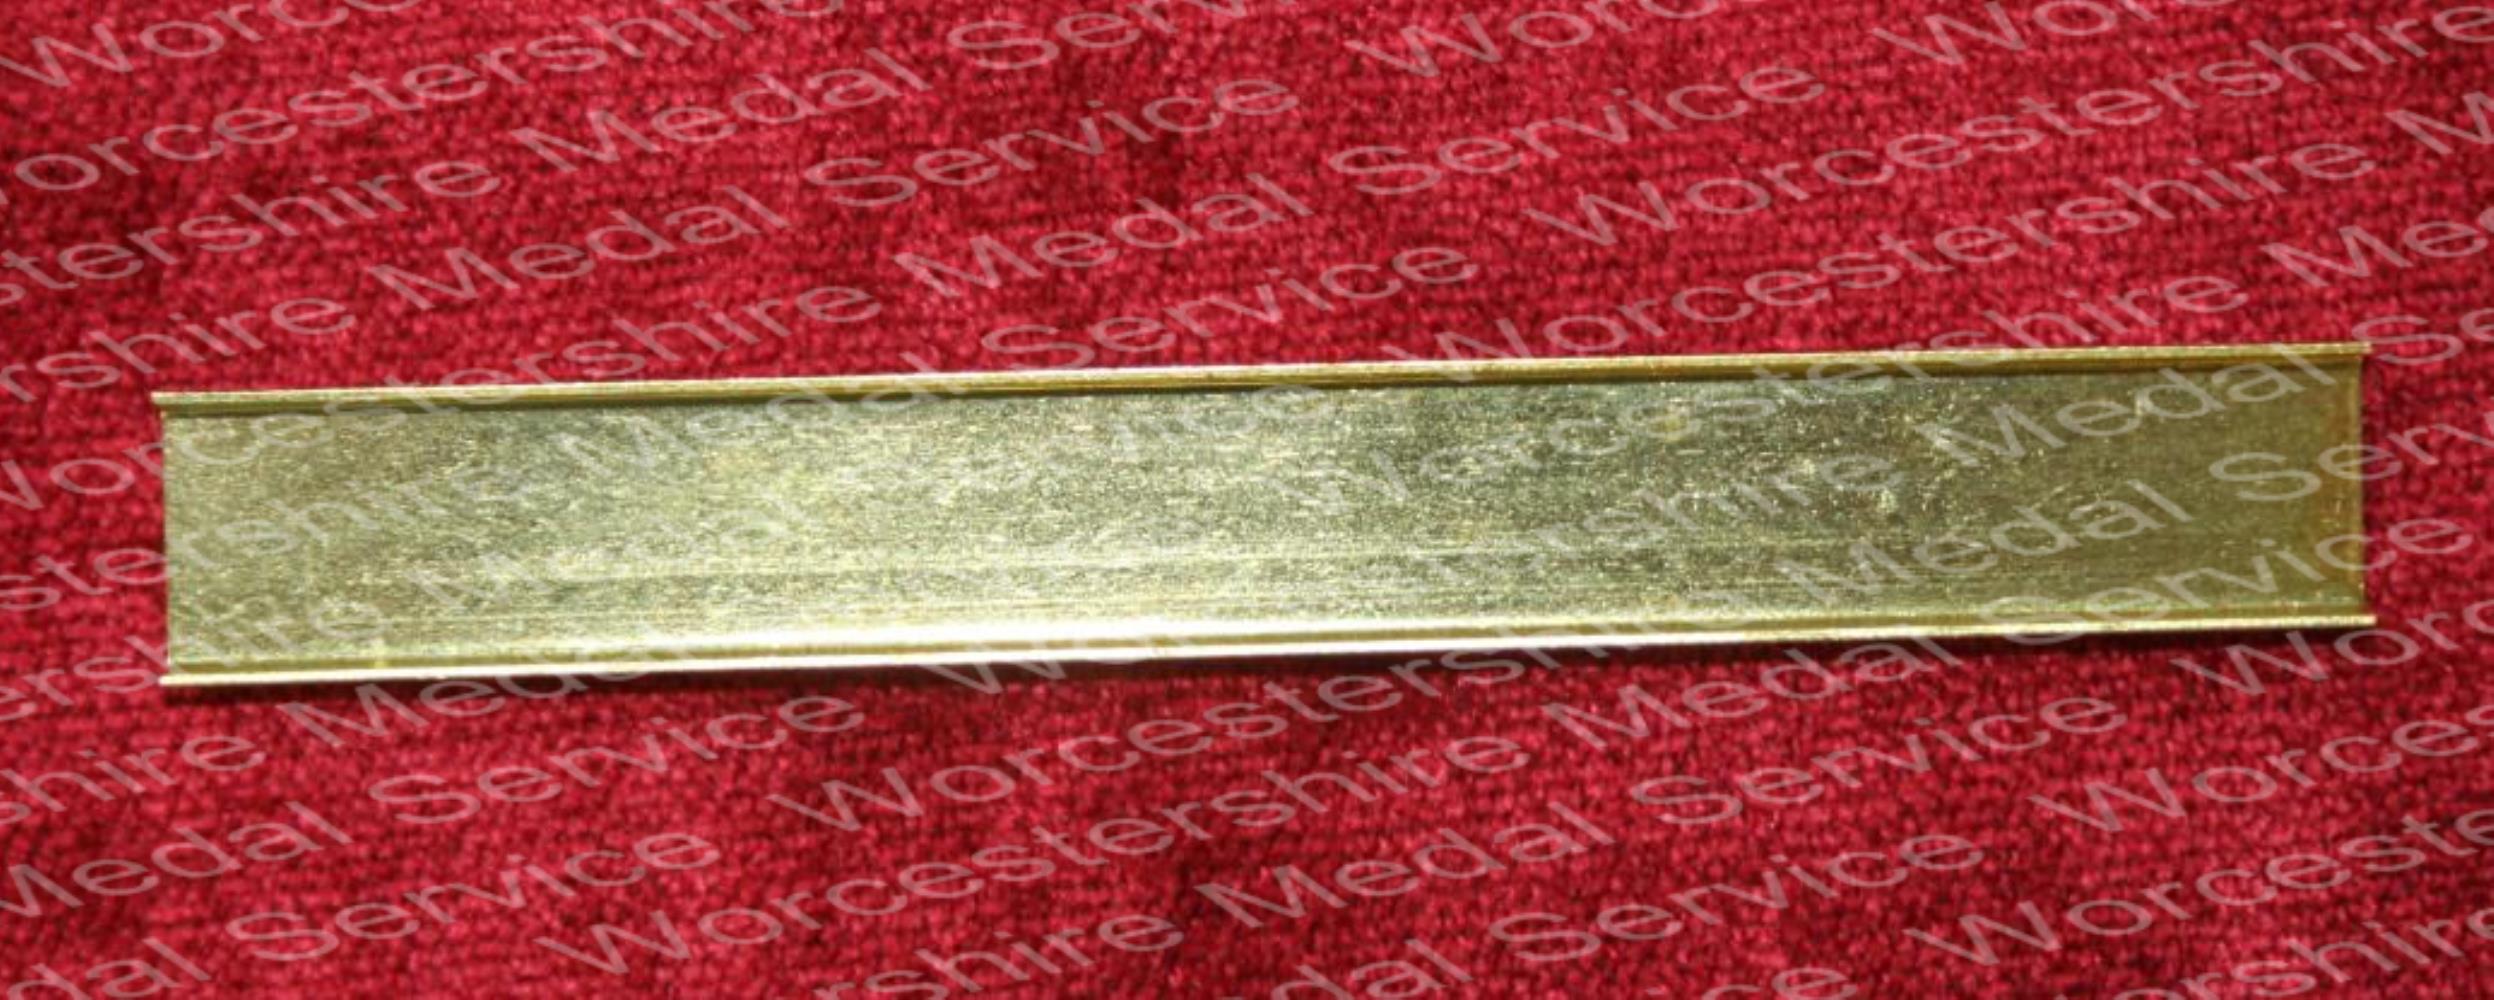 Worcestershire Medal Service: Metal Strip - 3 space